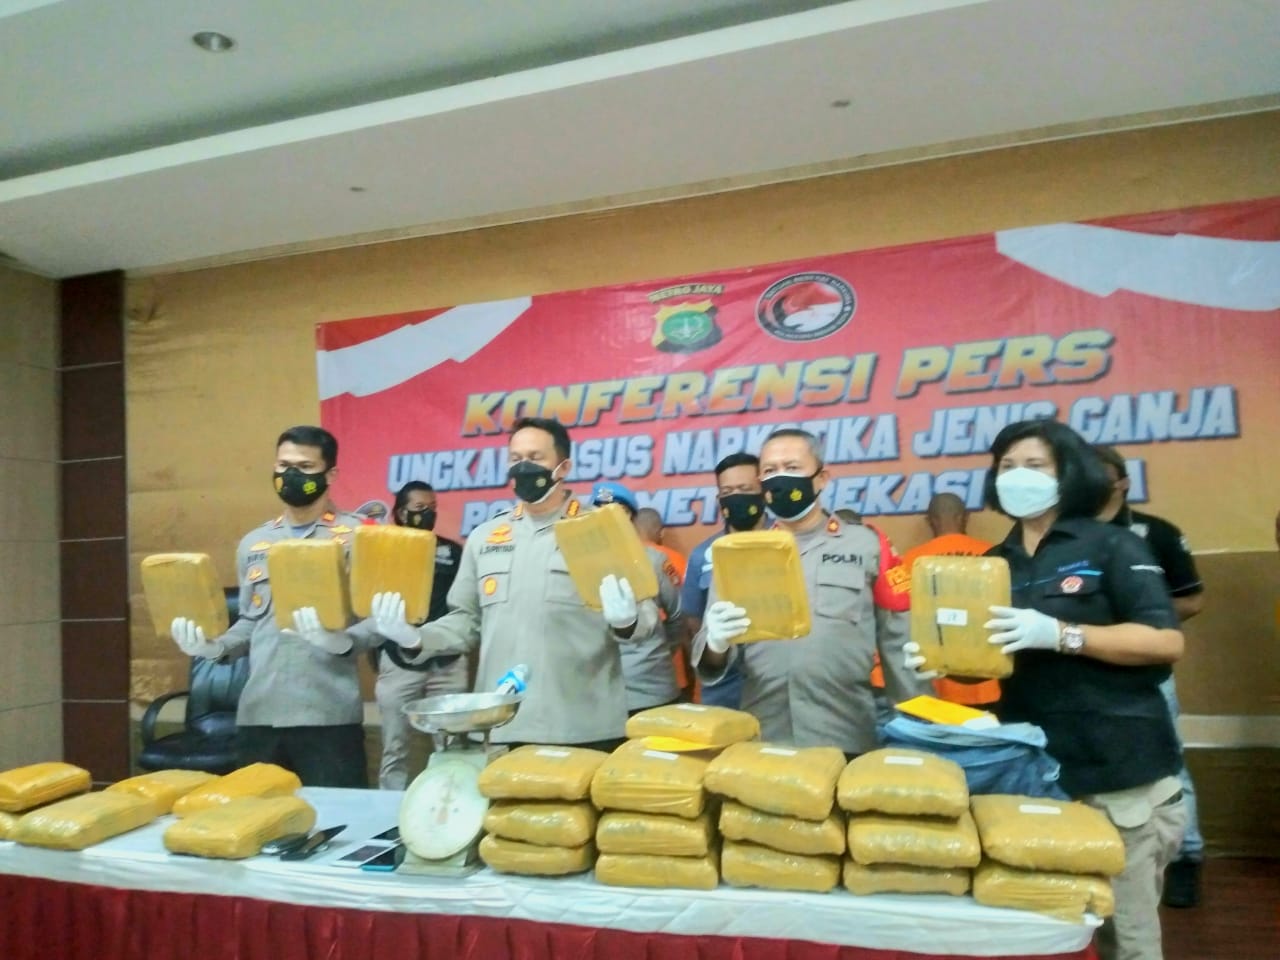 Kapolres Metro Bekasi Kota Kombes Pol Alosyius Suprijadi saat jumpa pers menunjukkan barang bukti 36 kg ganja dari lima genbong narkoba, Jumat (2/7/2021). Foto: Yessiana/Gobekasi.id